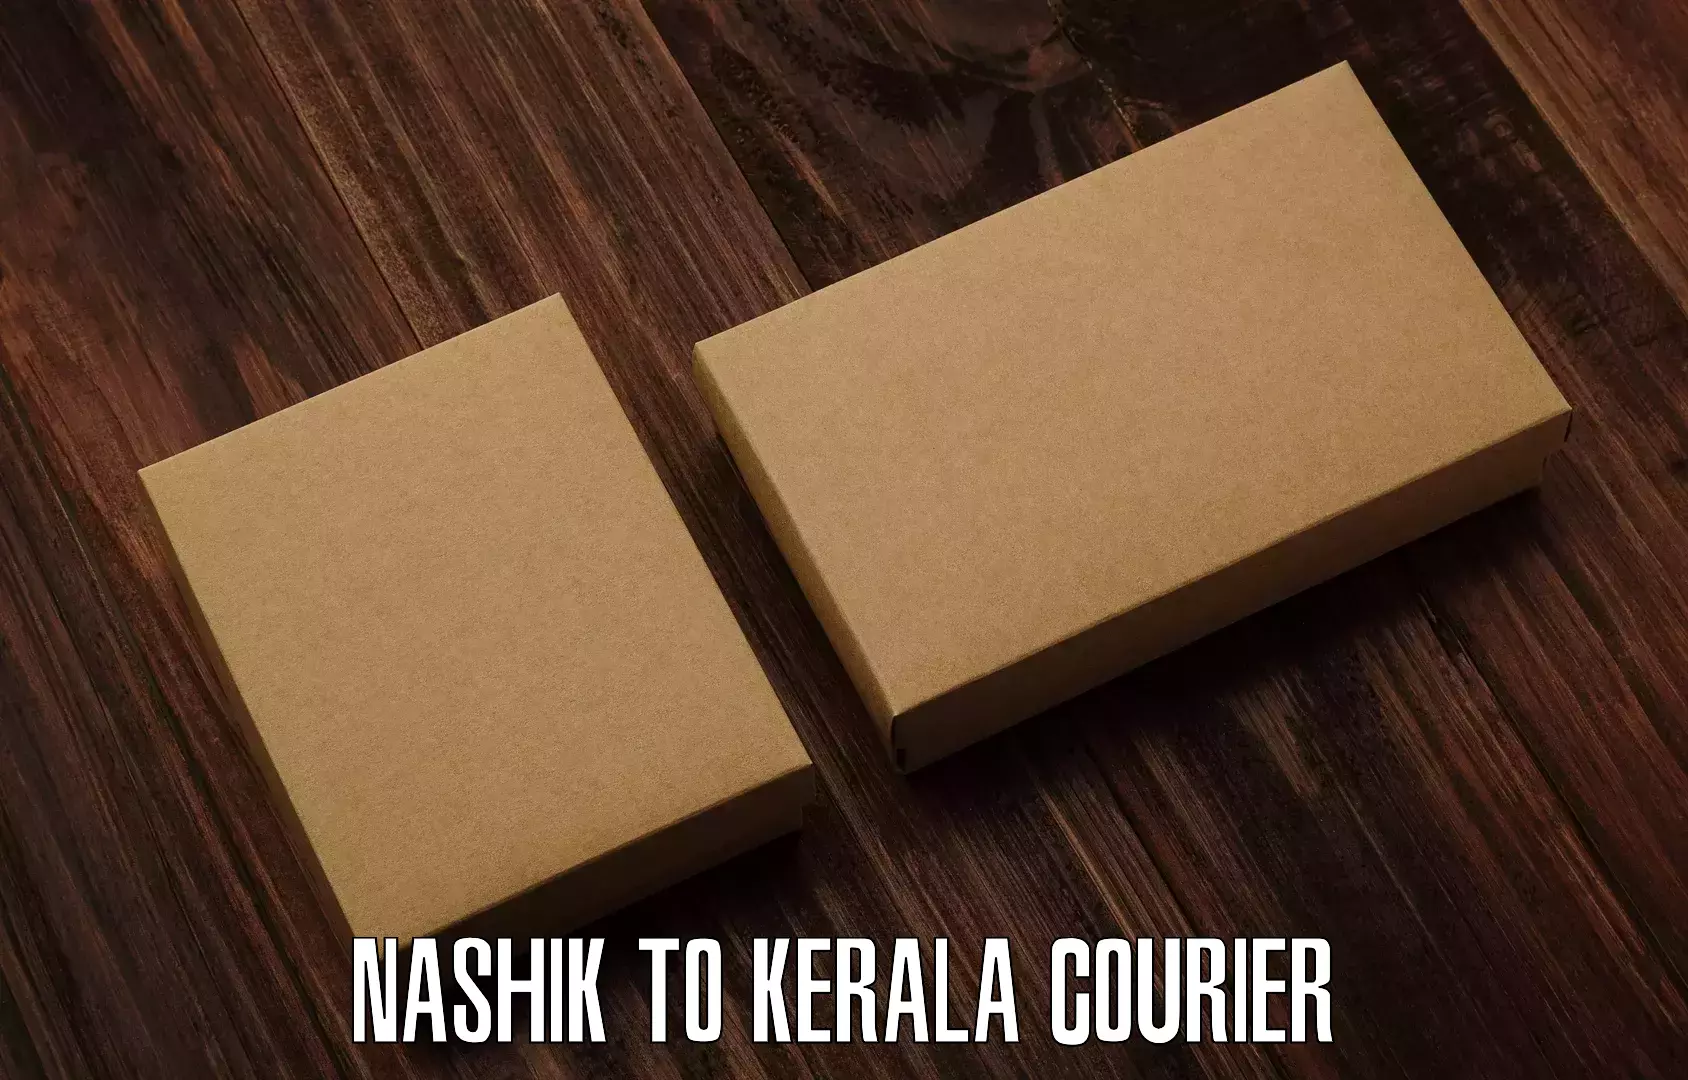 Tailored shipping plans in Nashik to Kerala